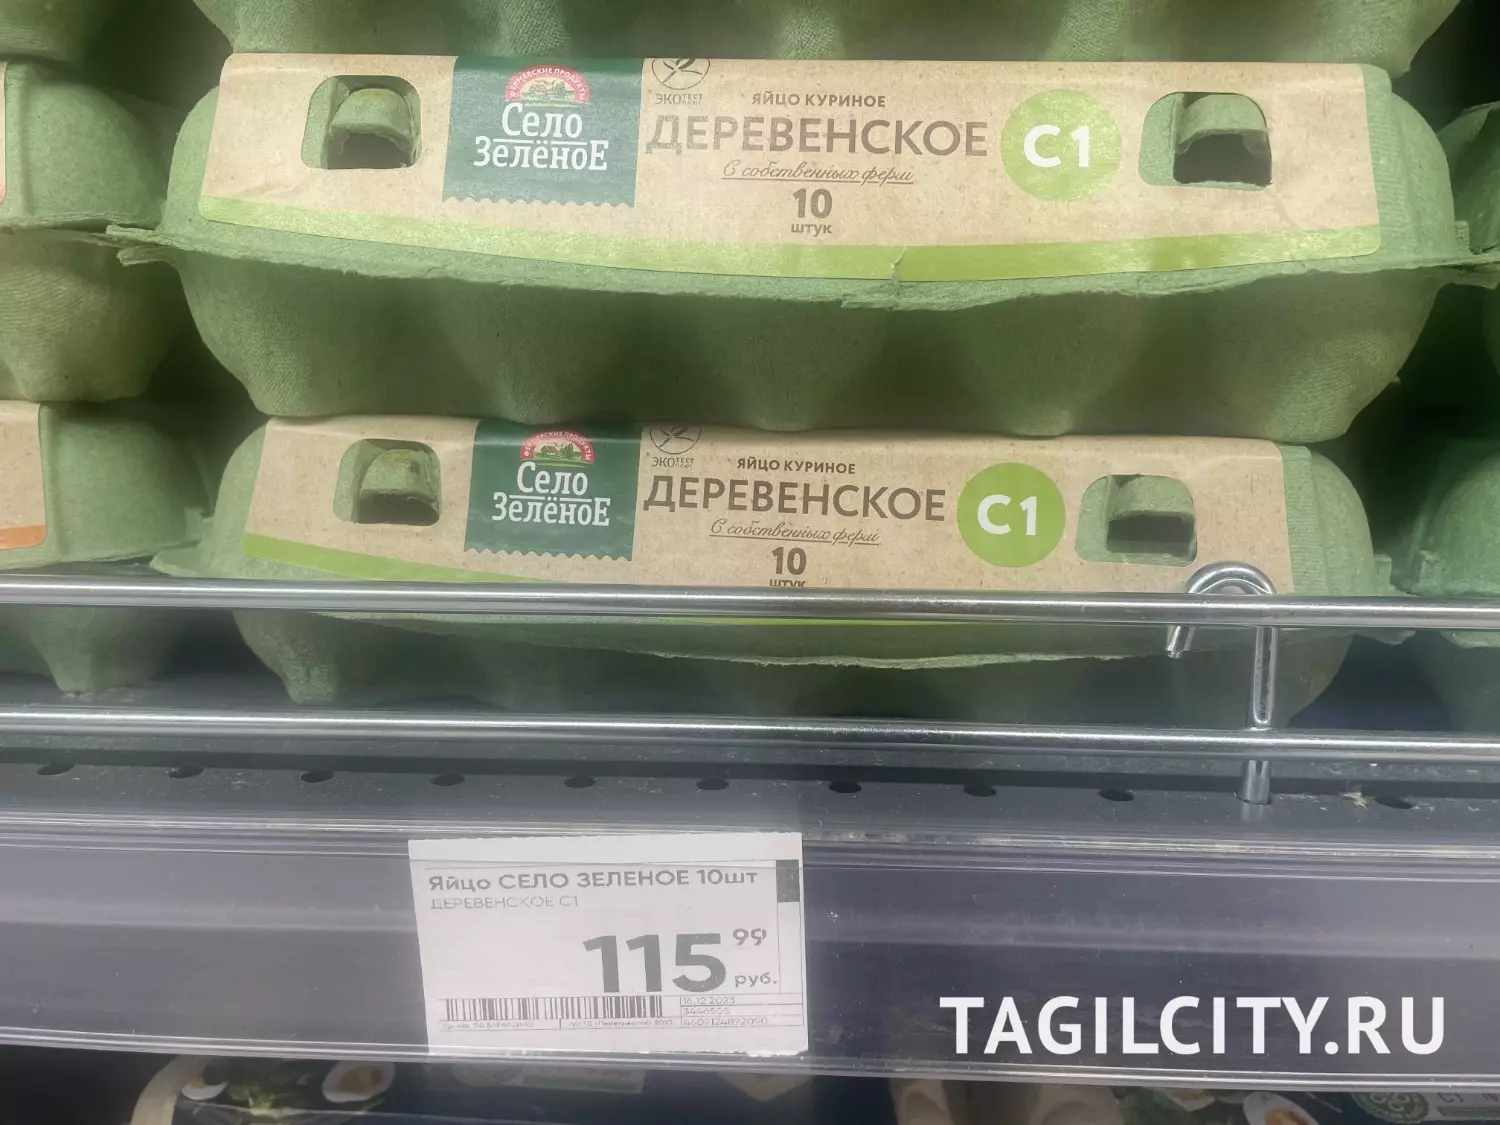 Цены на яйца в Нижнем Тагиле